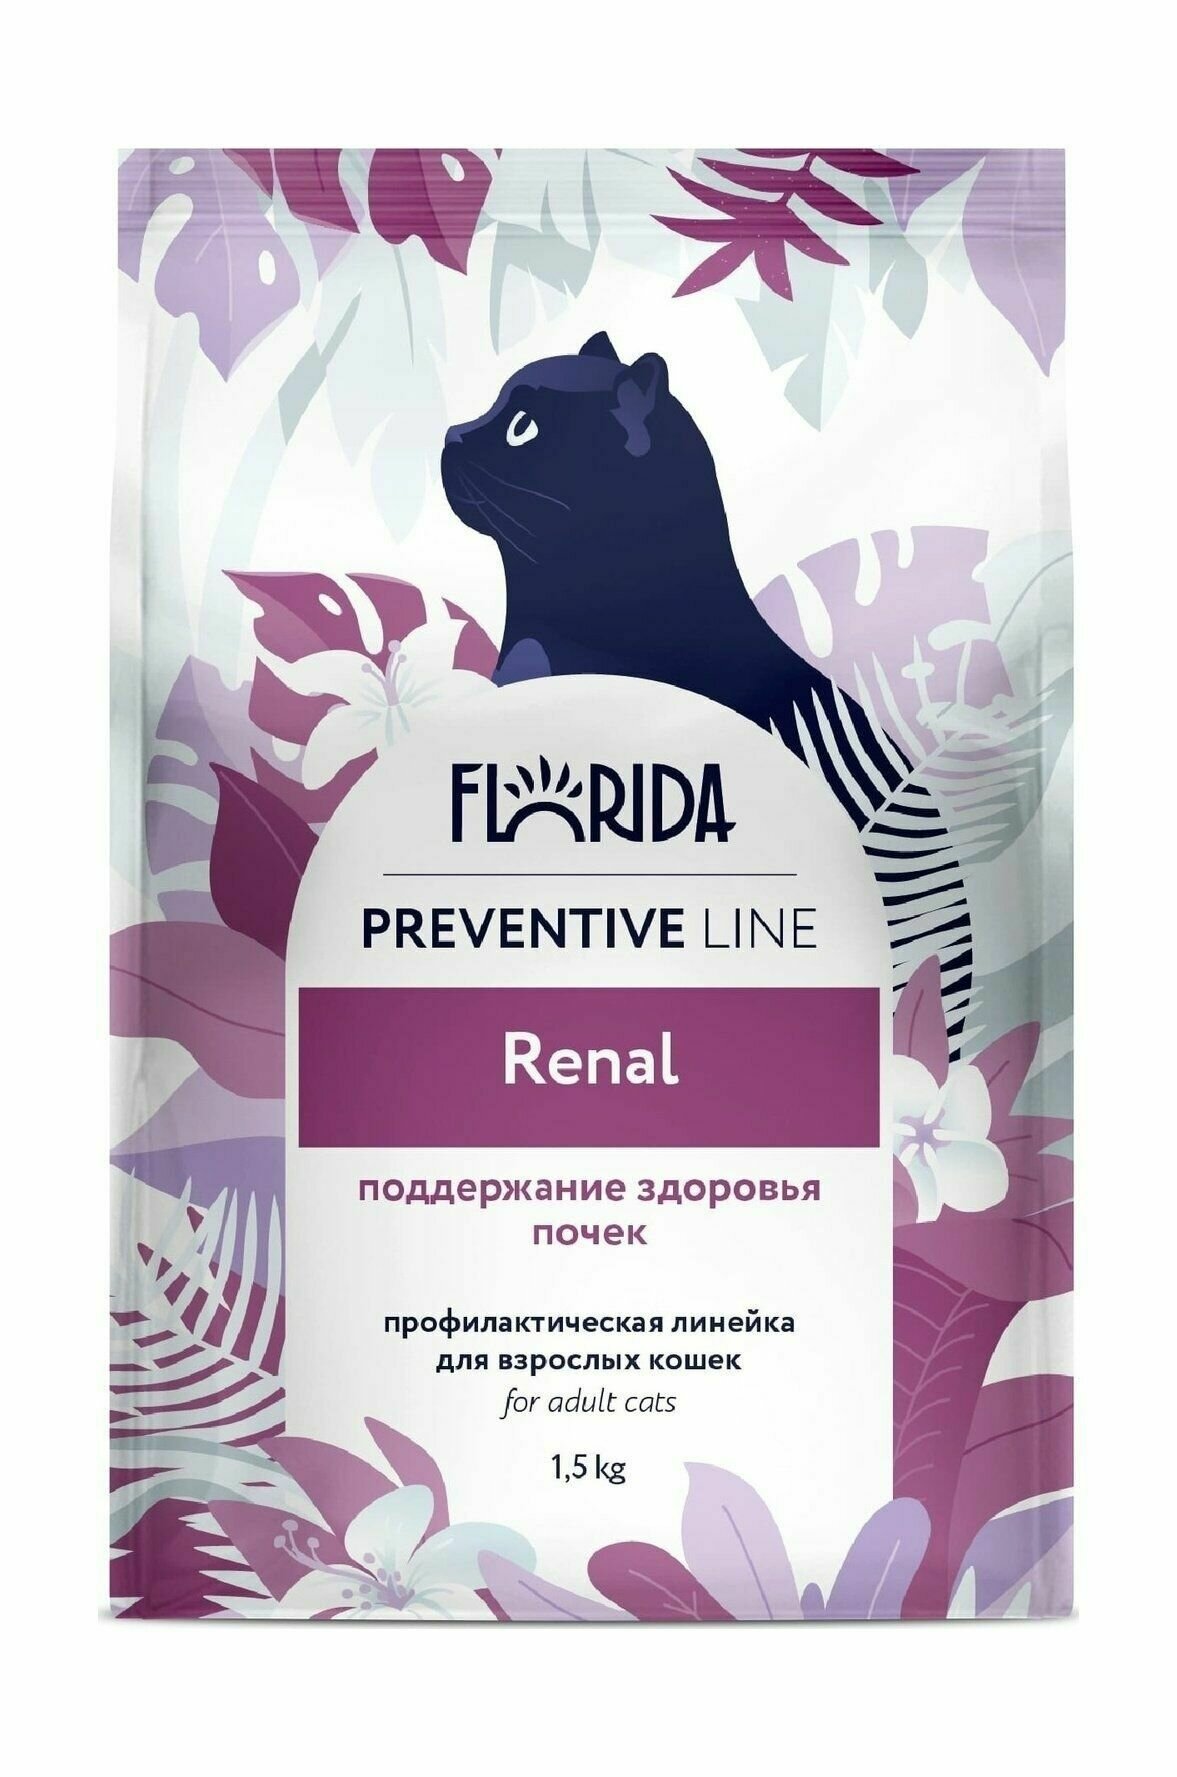 Florida Preventive Line Renal- Сухой корм для кошек, при заболеваниях почек (1,5 кг)